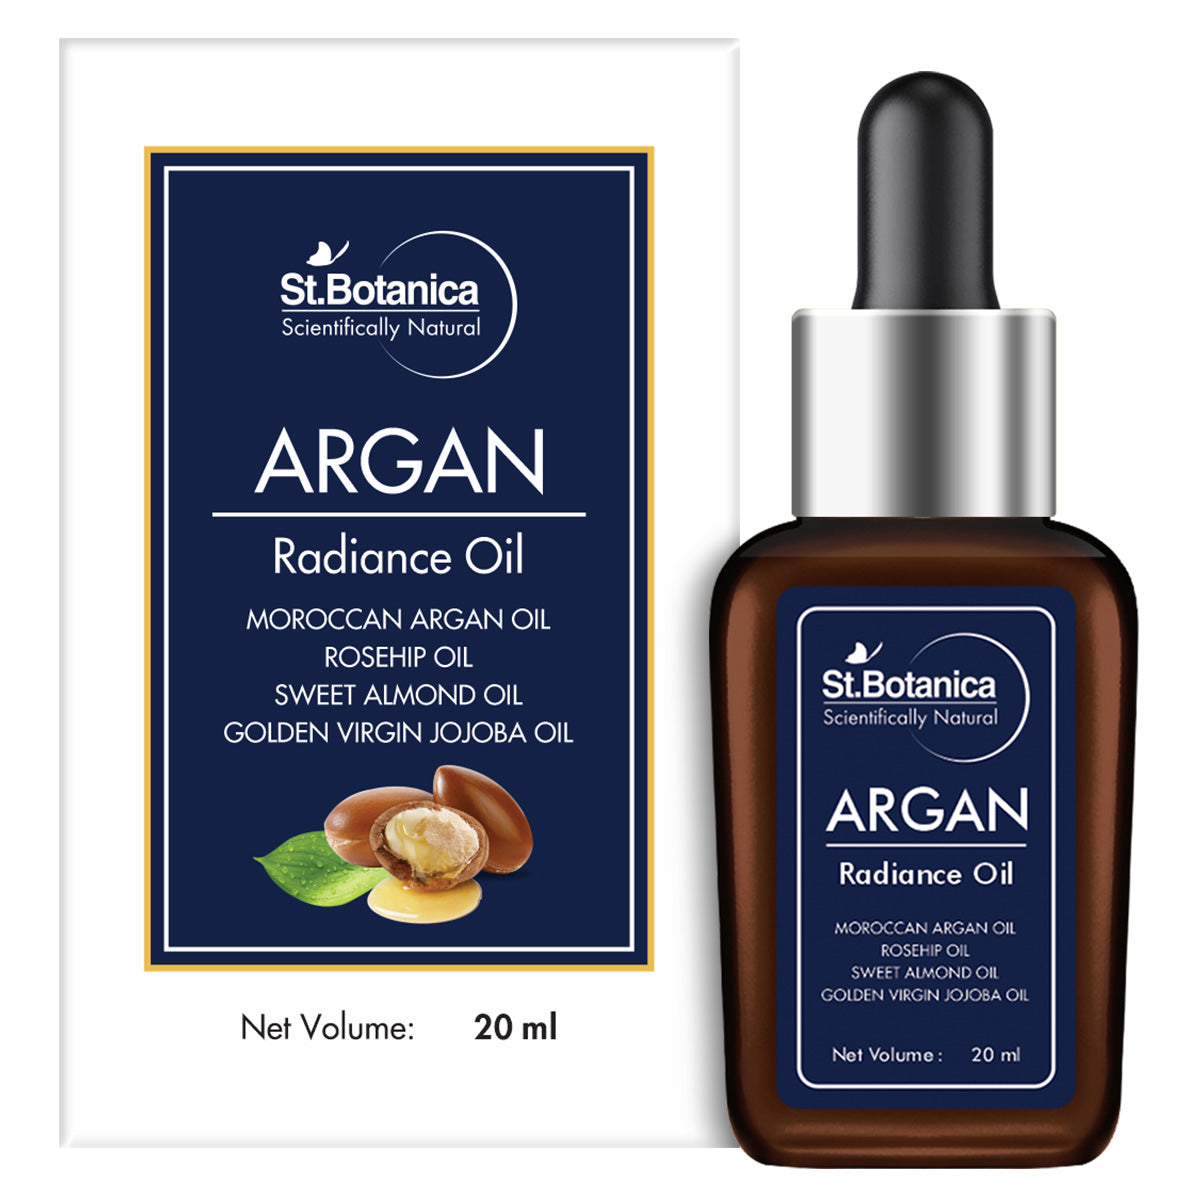 St.Botanica Argan Radiance Face Oil - Skin Brightening, Anti Aging & Anti Wrinkle Serum, 20 ml (STBOT499)